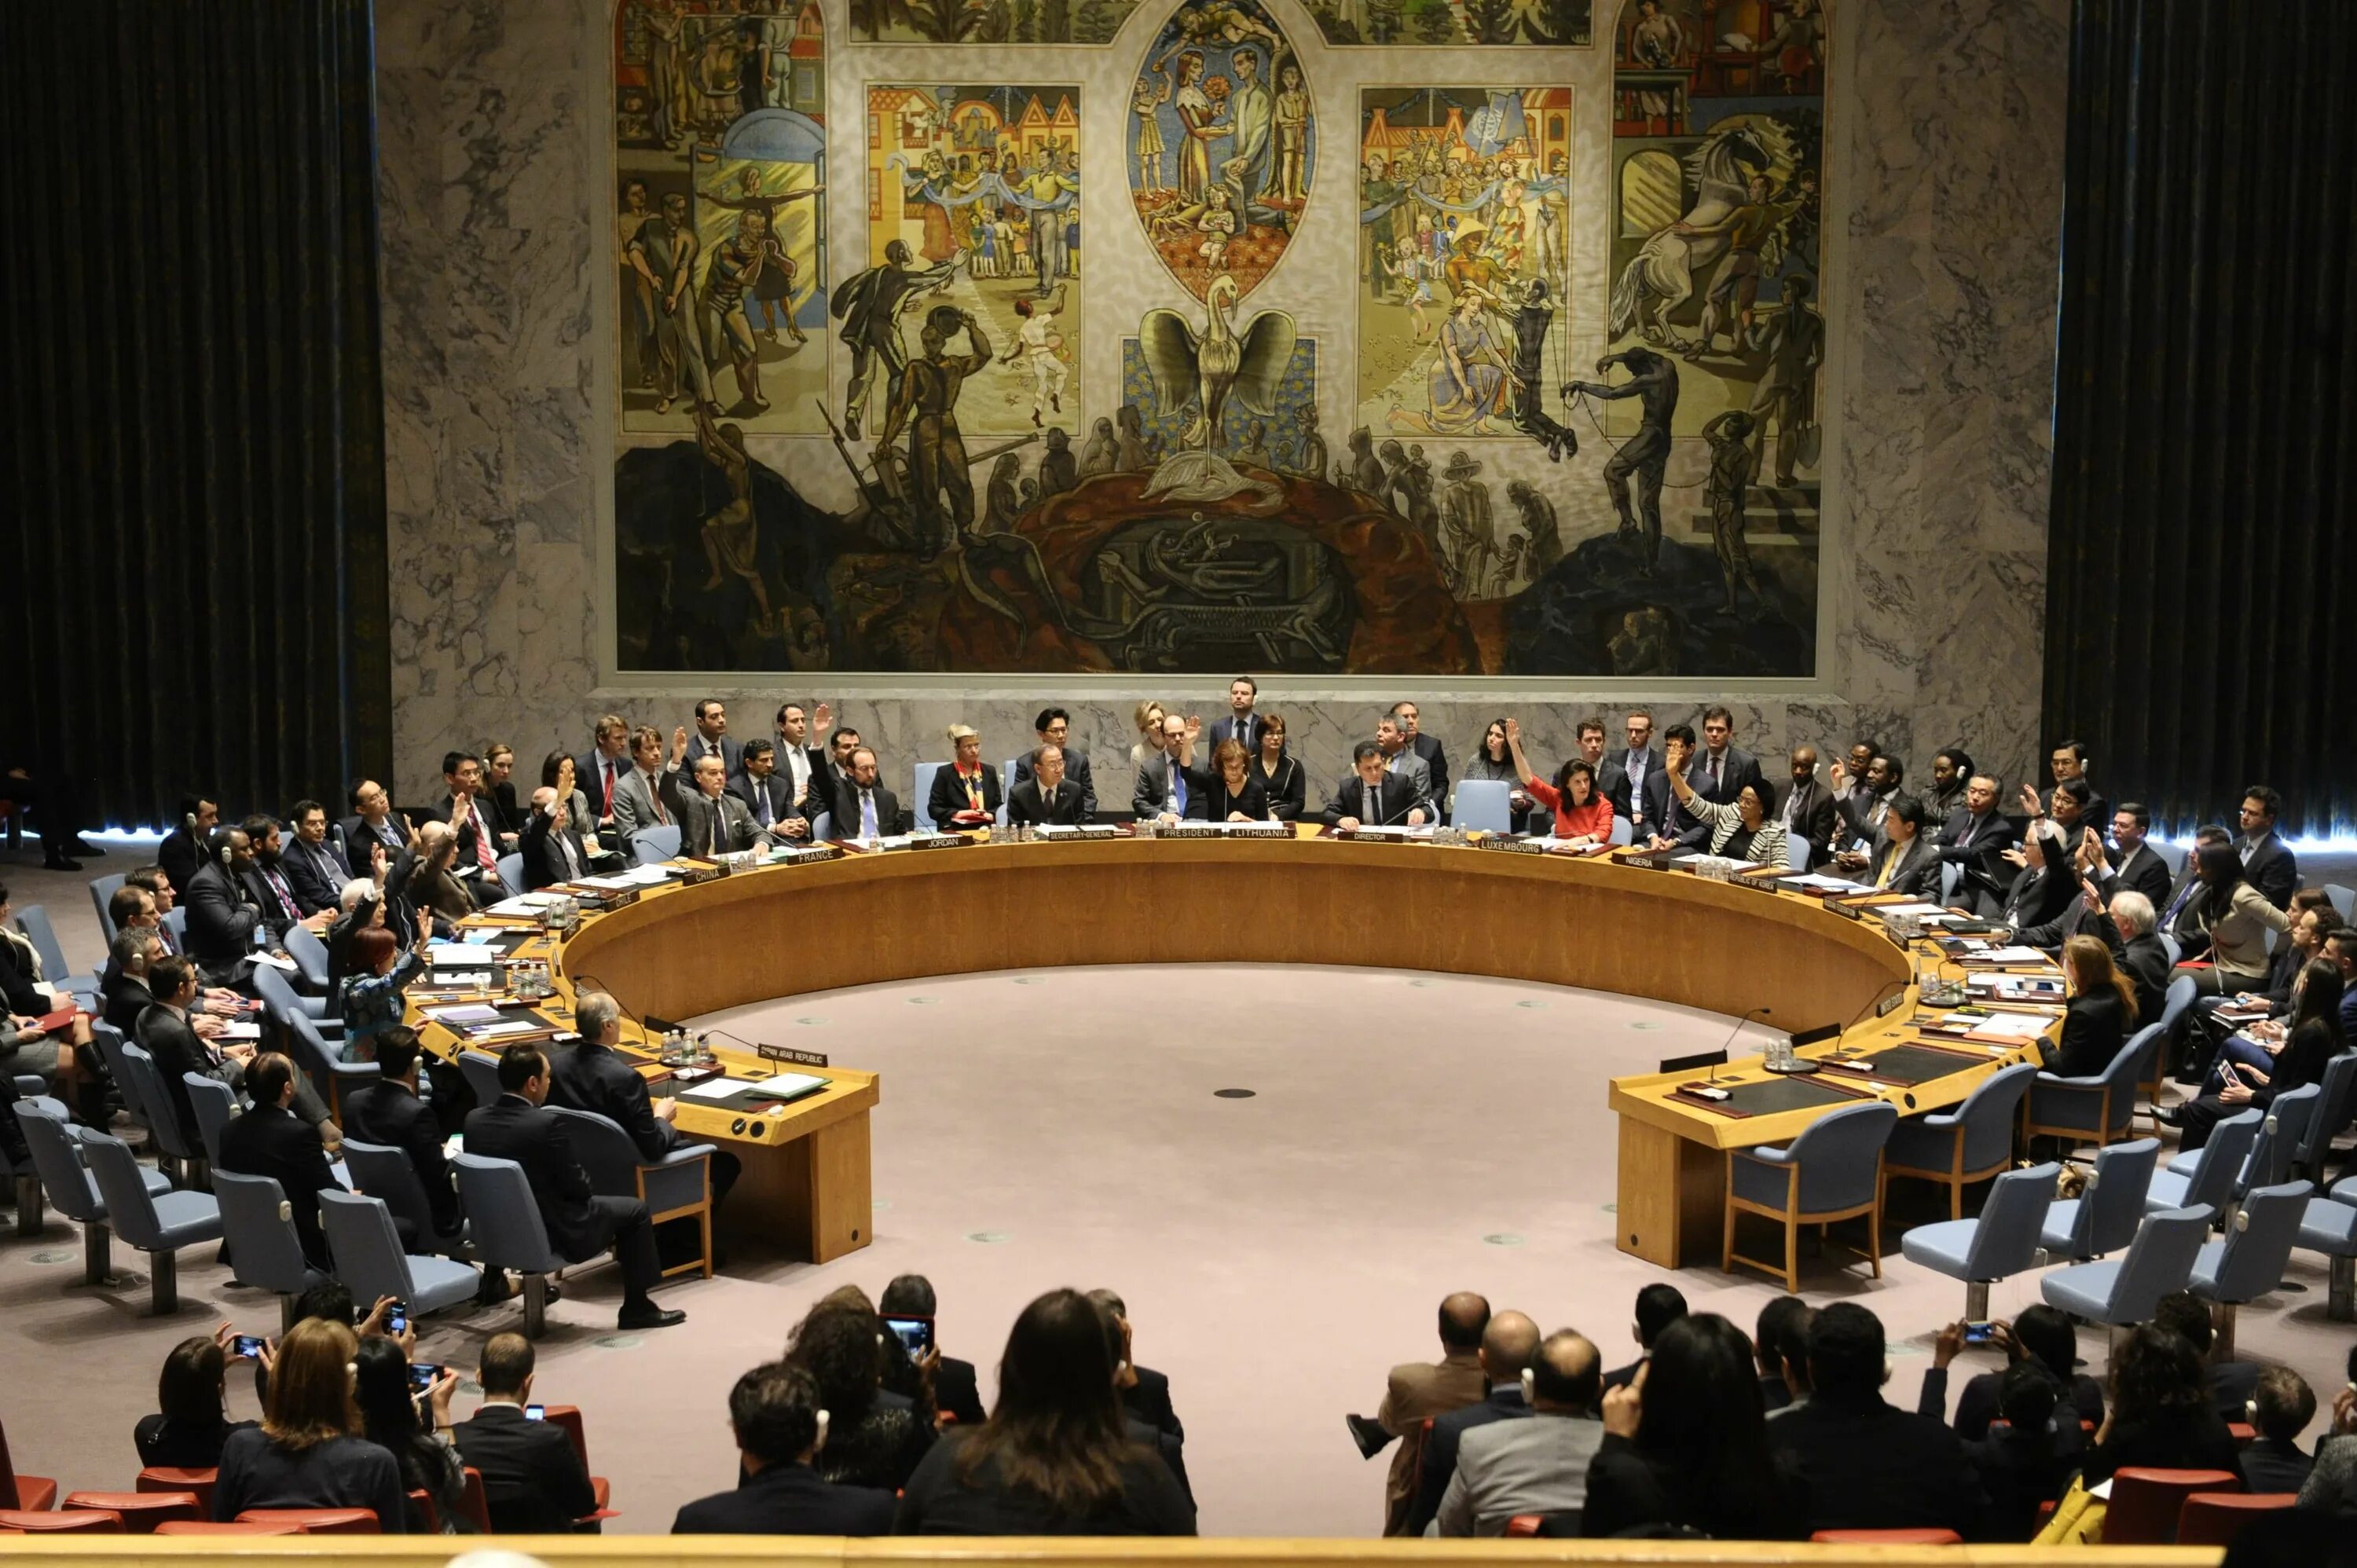 Комитет совета безопасности. Зал совета безопасности ООН. Зал заседаний совета безопасности ООН. Зал заседаний Совбеза ООН. Заседание совета безопасности ООН.